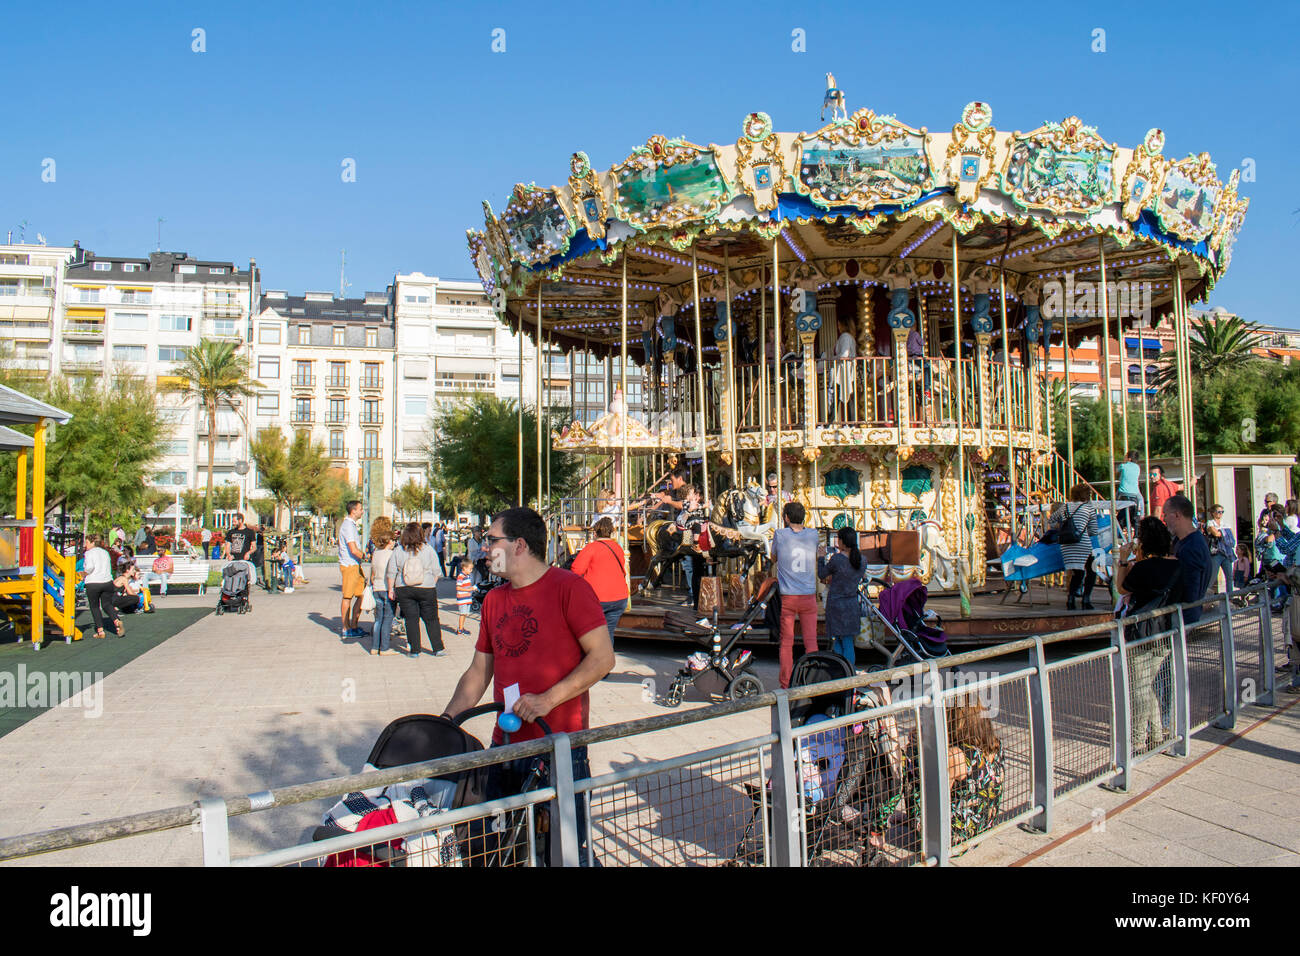 Une grande roue à carrousel dans le parc sur le rivage du golfe de Gascogne, océan Atlantique, ville de San Sebastian en Espagne Banque D'Images